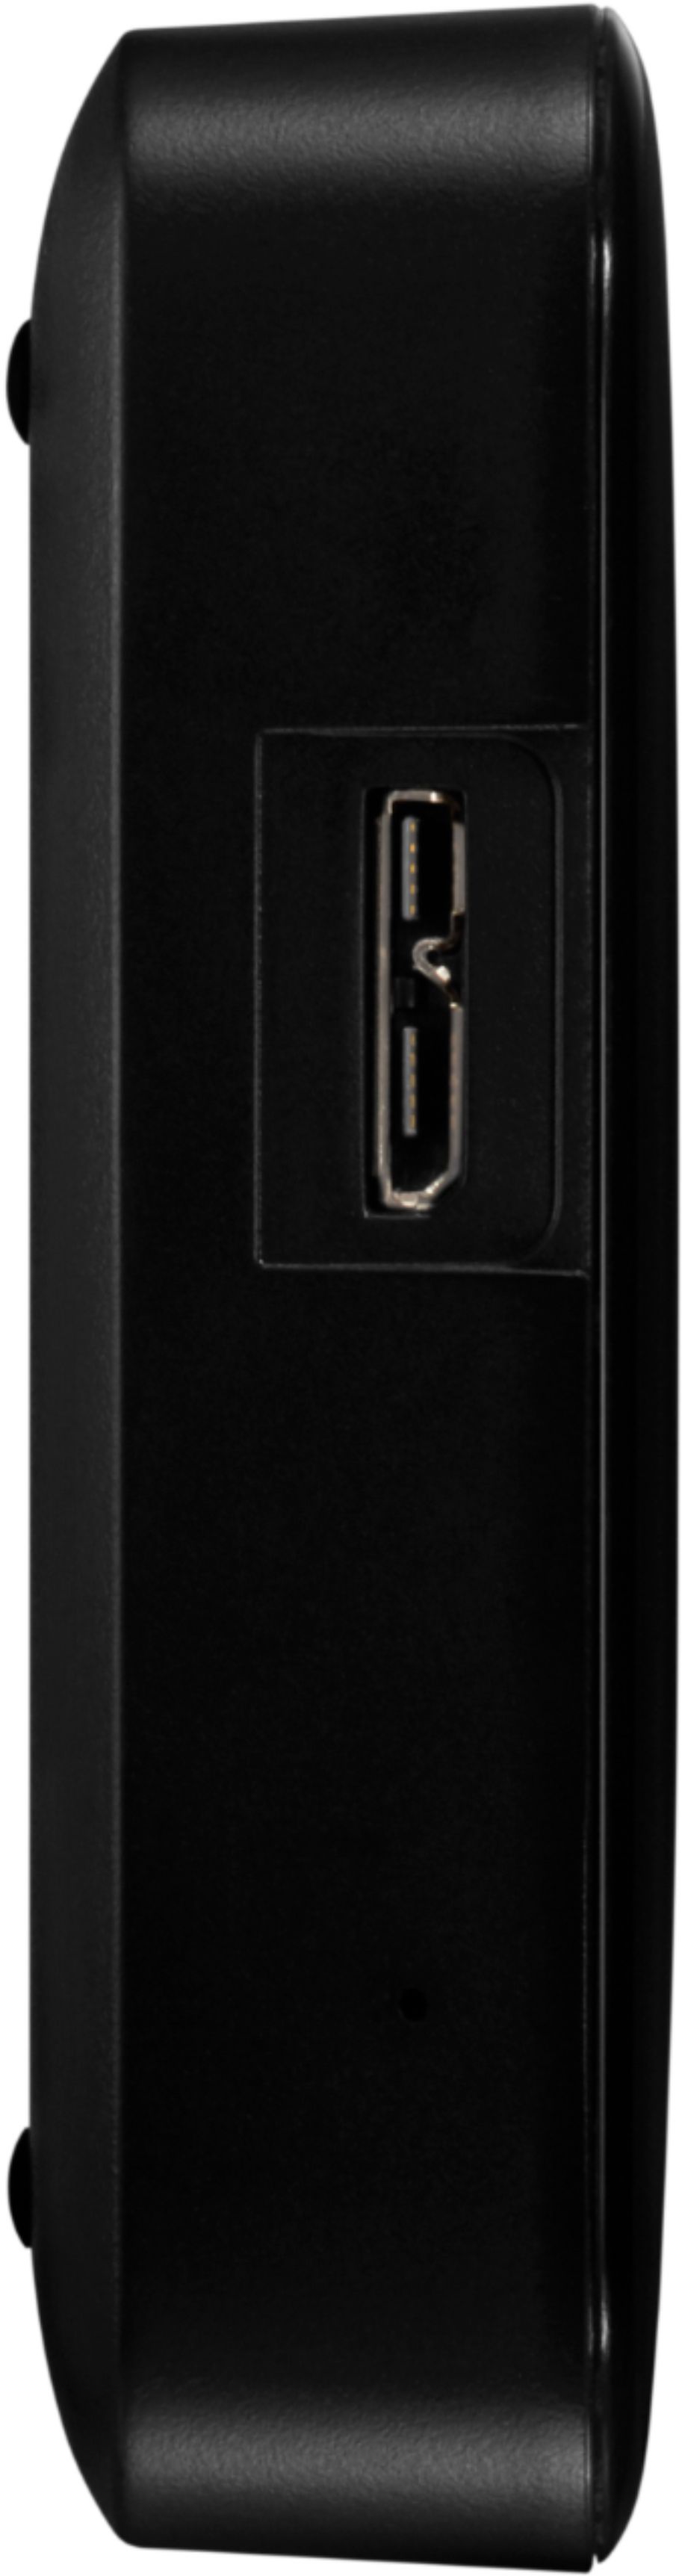 Disque dur externe de bureau USB 3.0 de 18 To easystore de WD  (WDBAMA0180HBK-NESE) - Noir - Seulement chez Best Buy